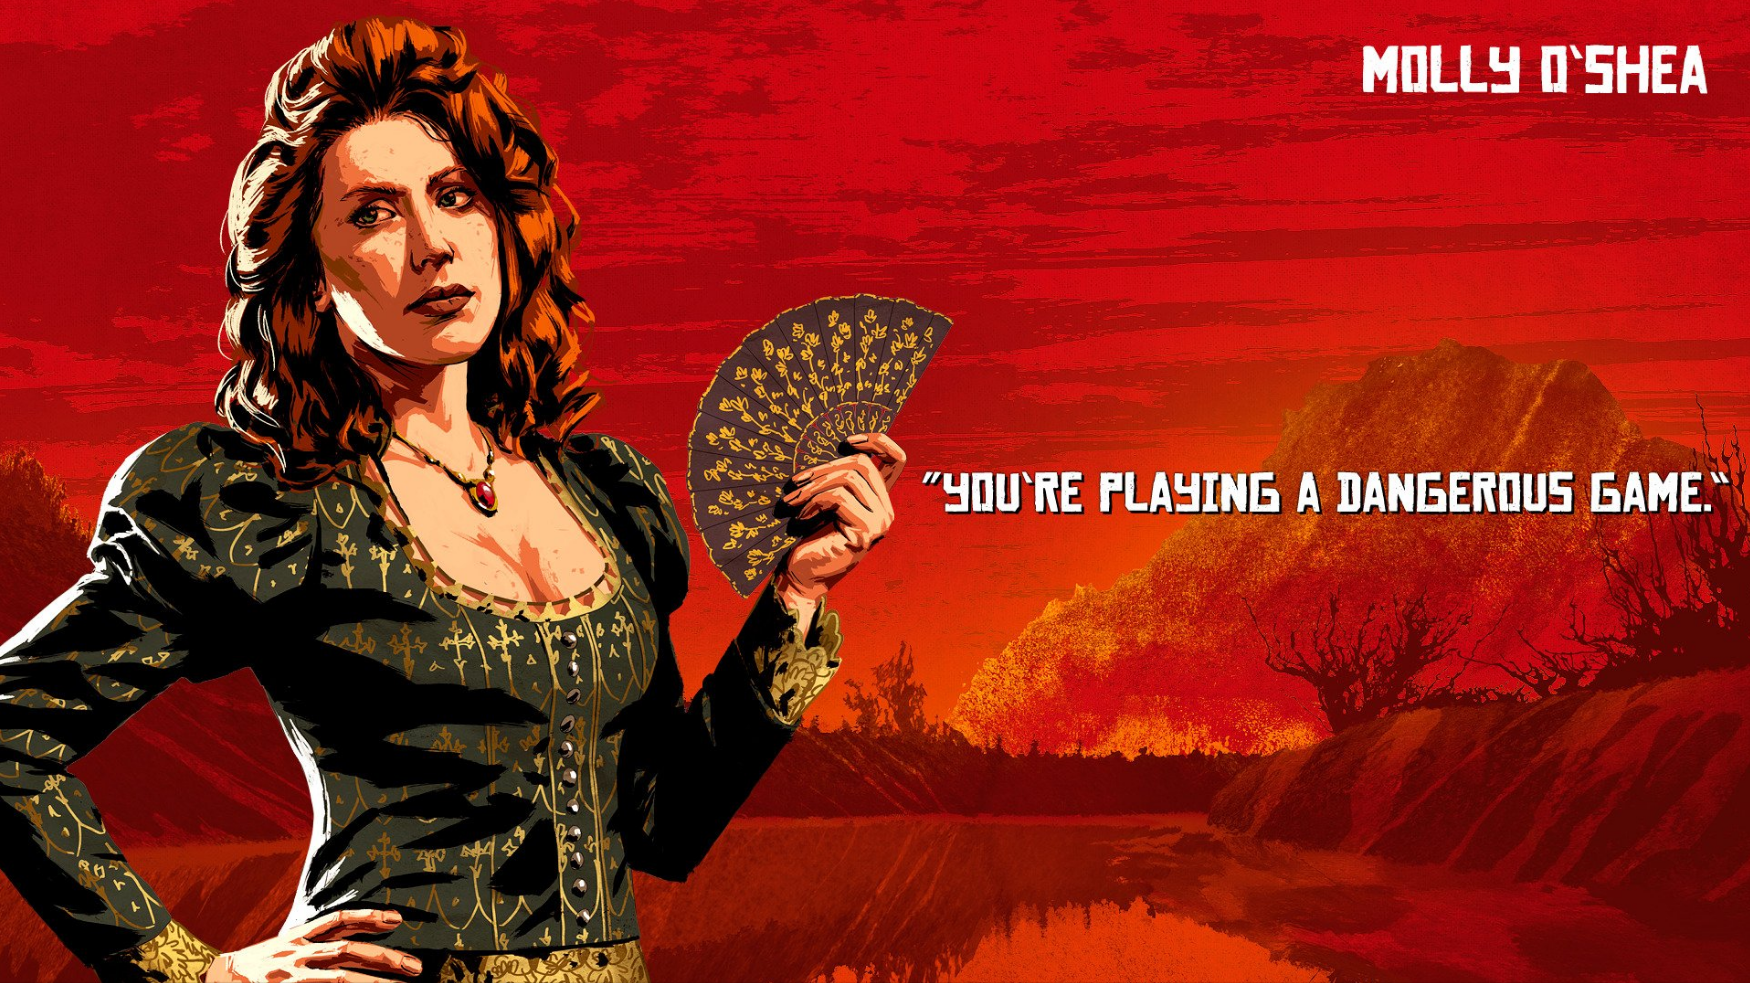 Red Dead Redemption 2 recebe primeiro trailer da versão para PC – Tecnoblog